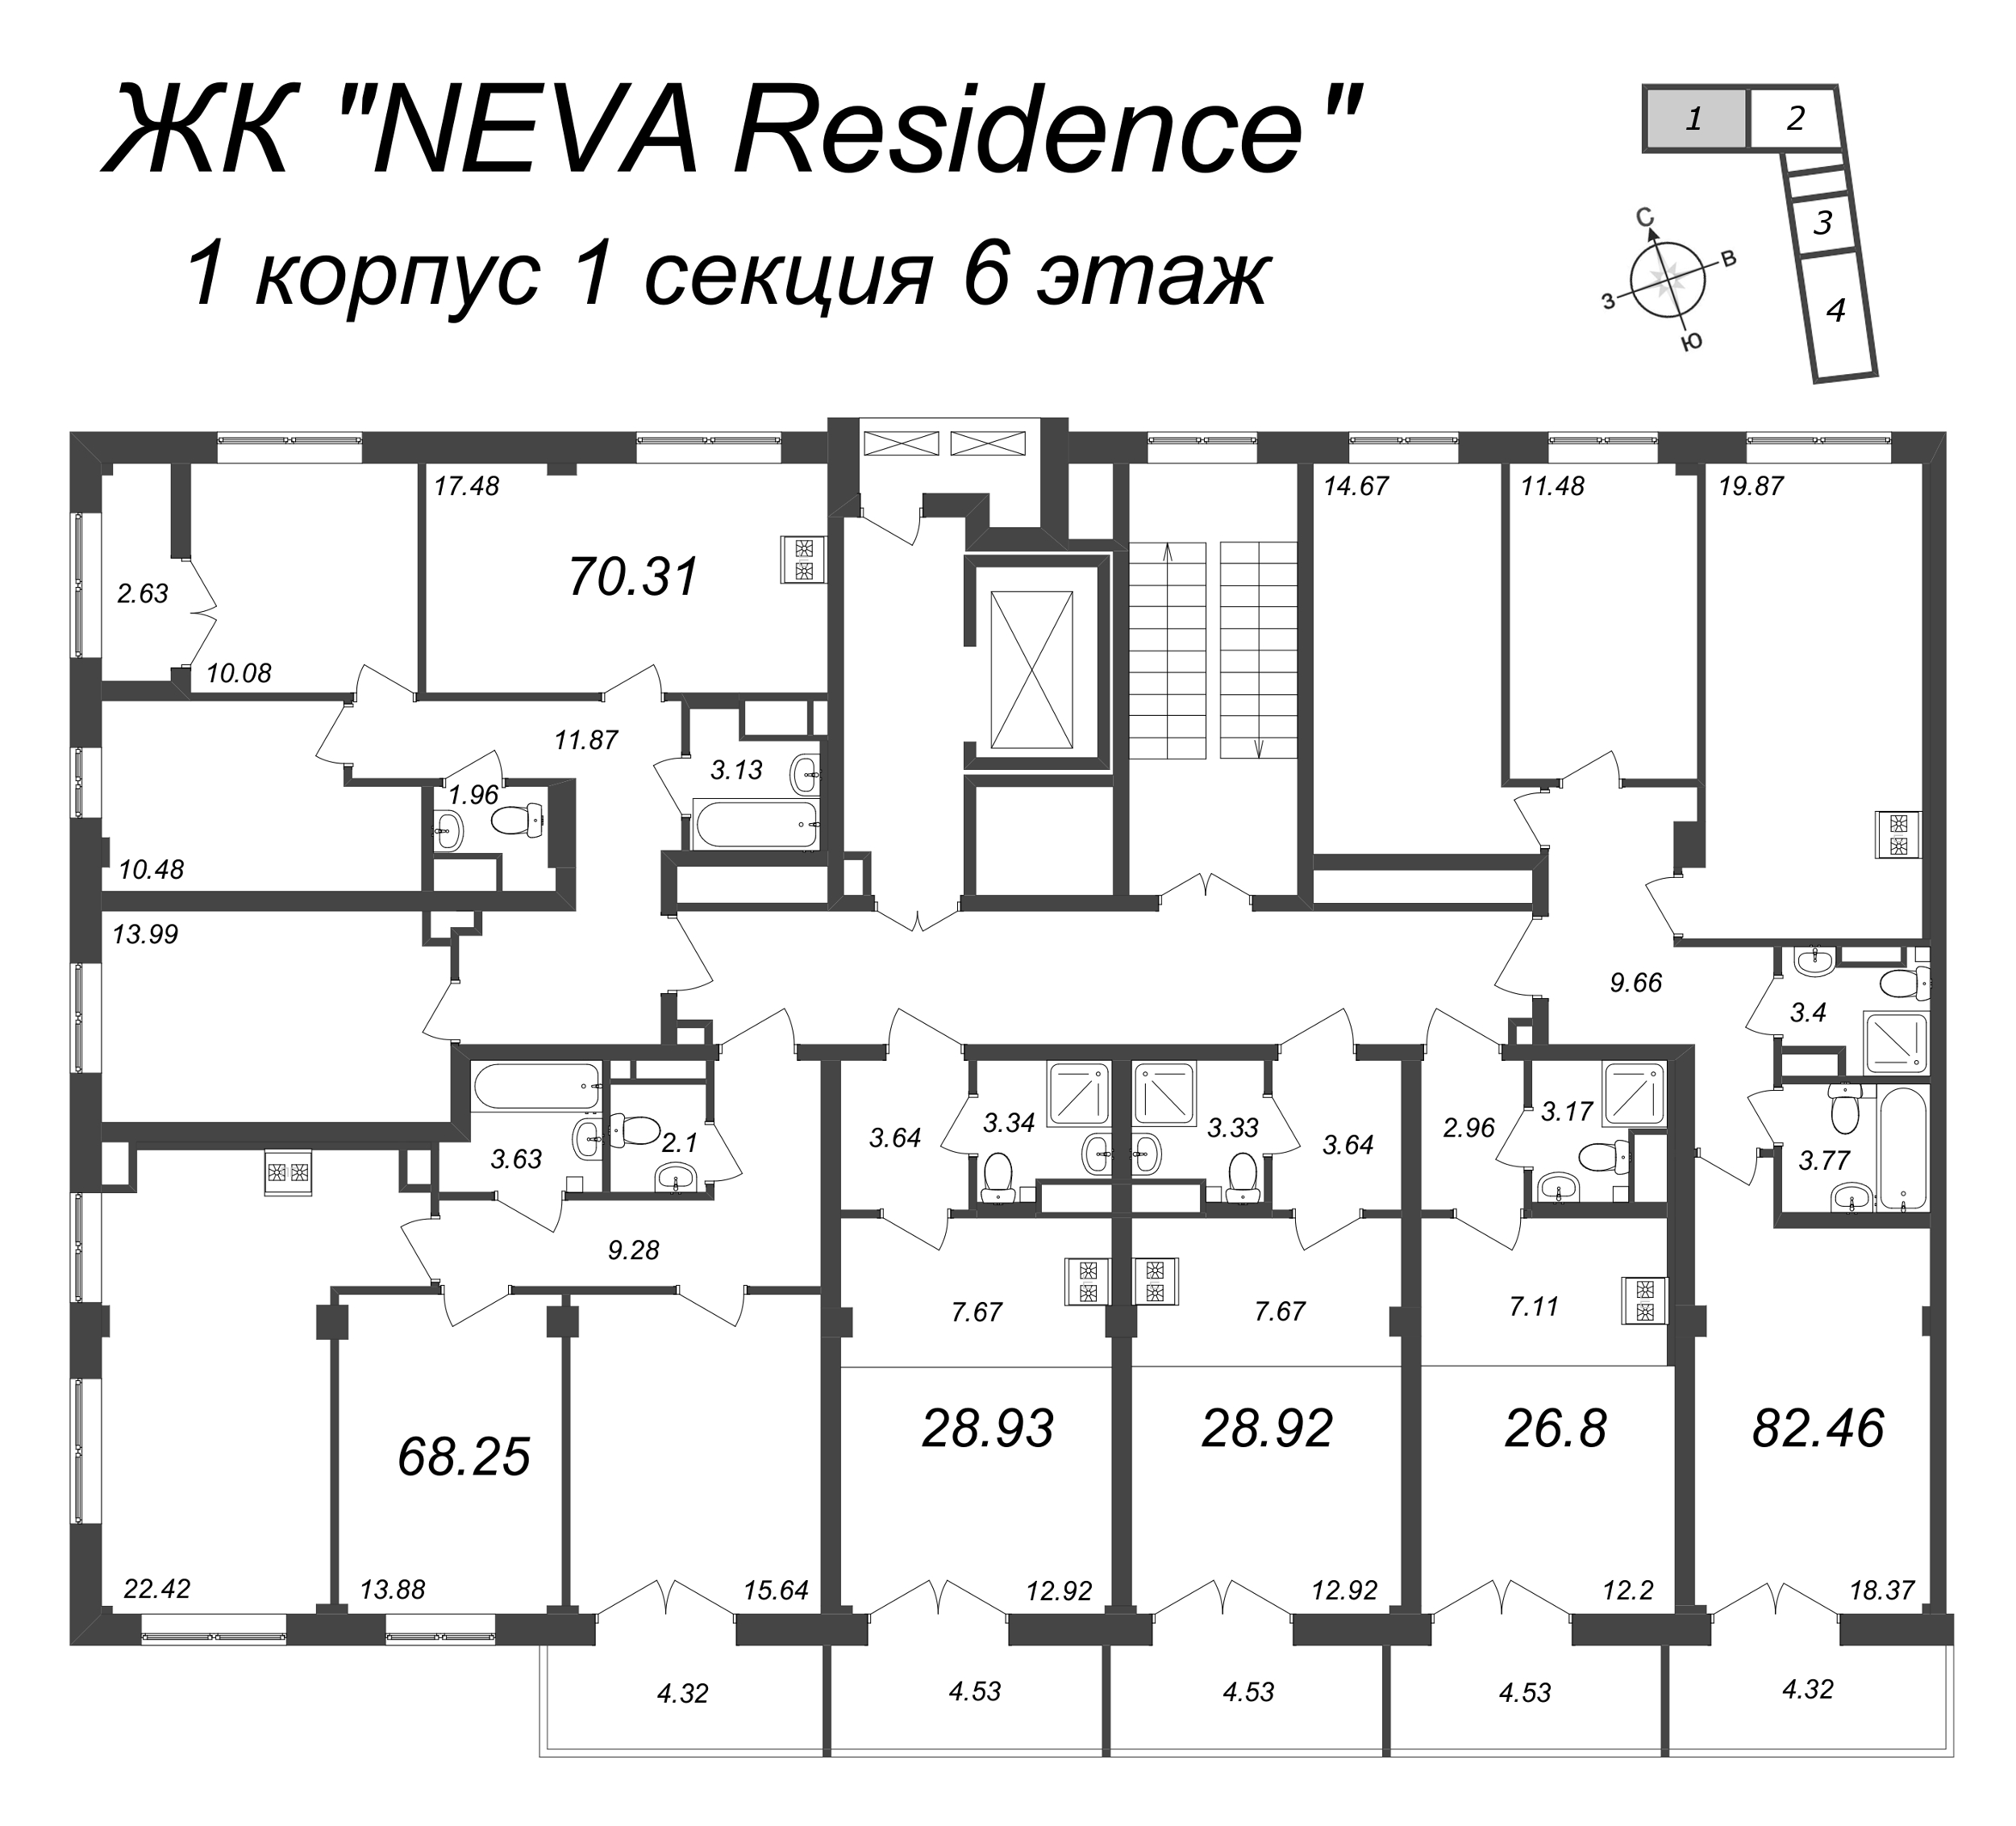 4-комнатная (Евро) квартира, 70.31 м² в ЖК "Neva Residence" - планировка этажа